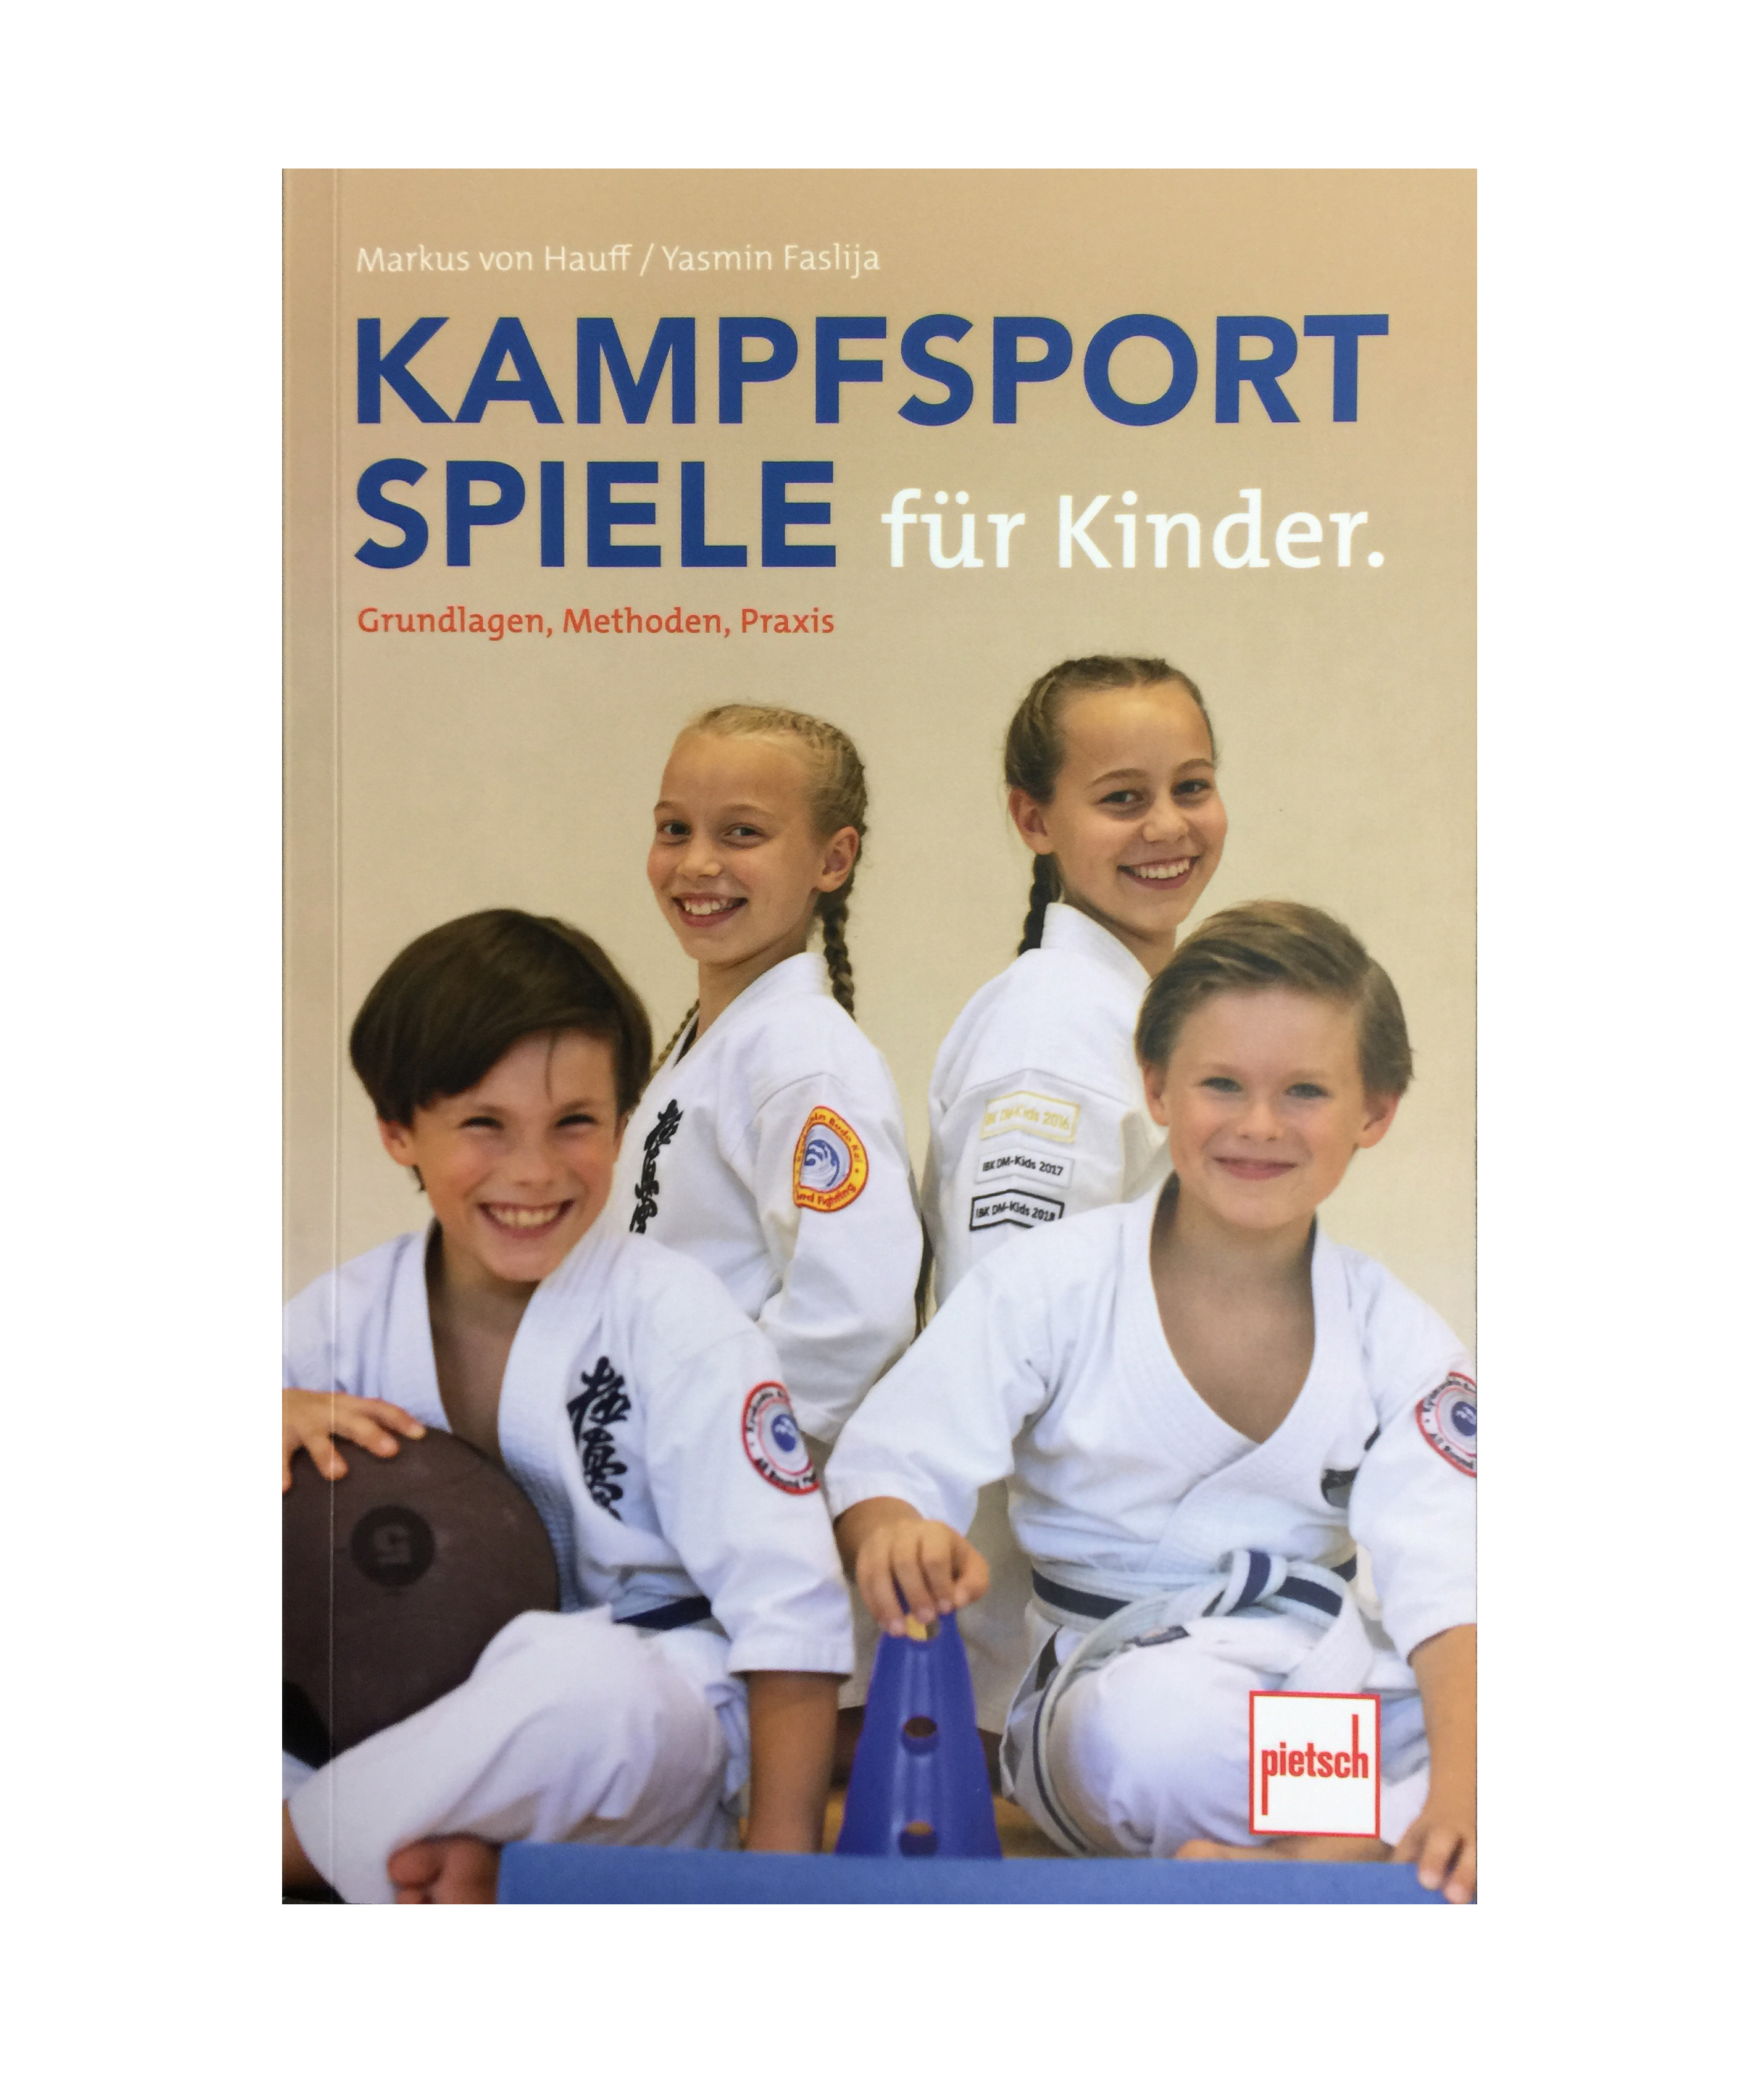 Kampfsportspiele für Kinder (von Hauff, Markus Michael / Faslija, Yasmin)